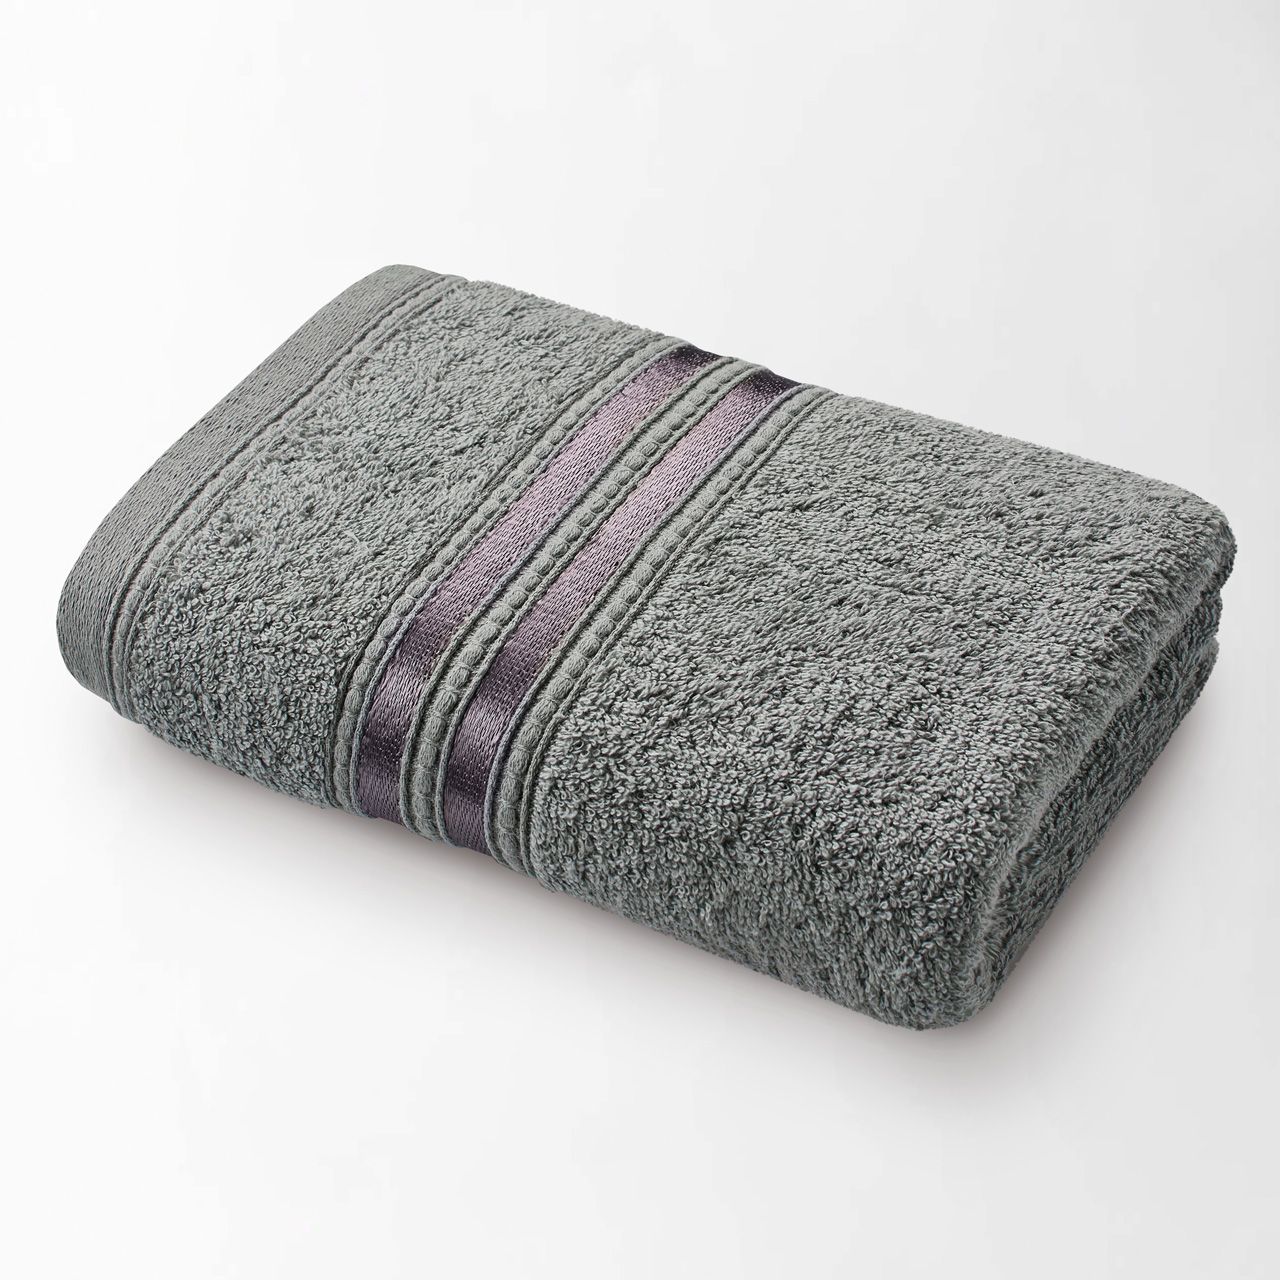 Полотенце Гранд цвет: серый (50х90 см), размер 50х90 см